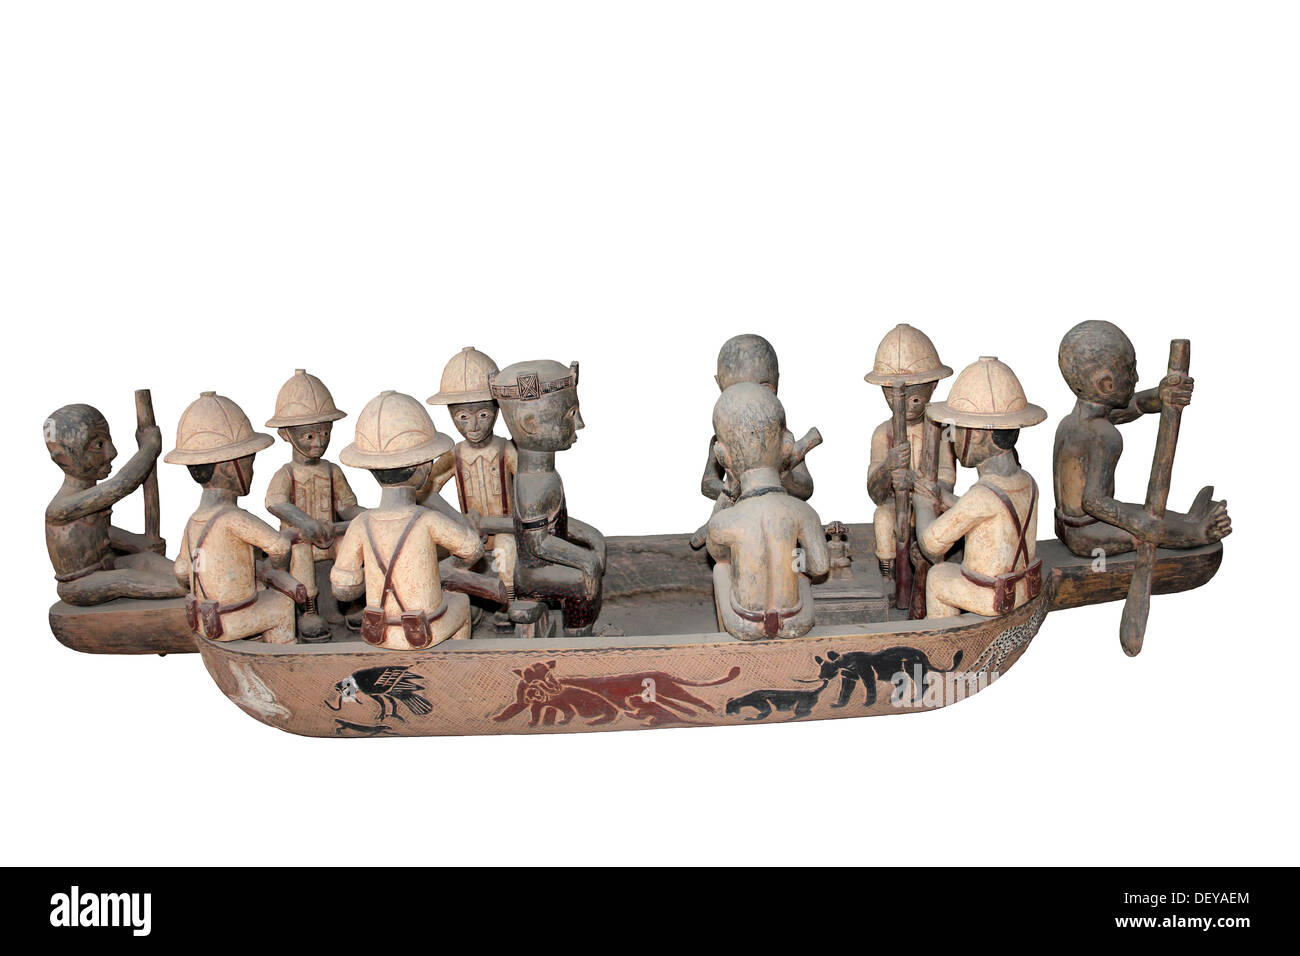 Holzschnitzerei Darstellung der Europäer in Afrika wird von den Einheimischen in einem Boot gepaddelt. Möglicherweise durch das Volk der Yoruba, Nigeria Stockfoto